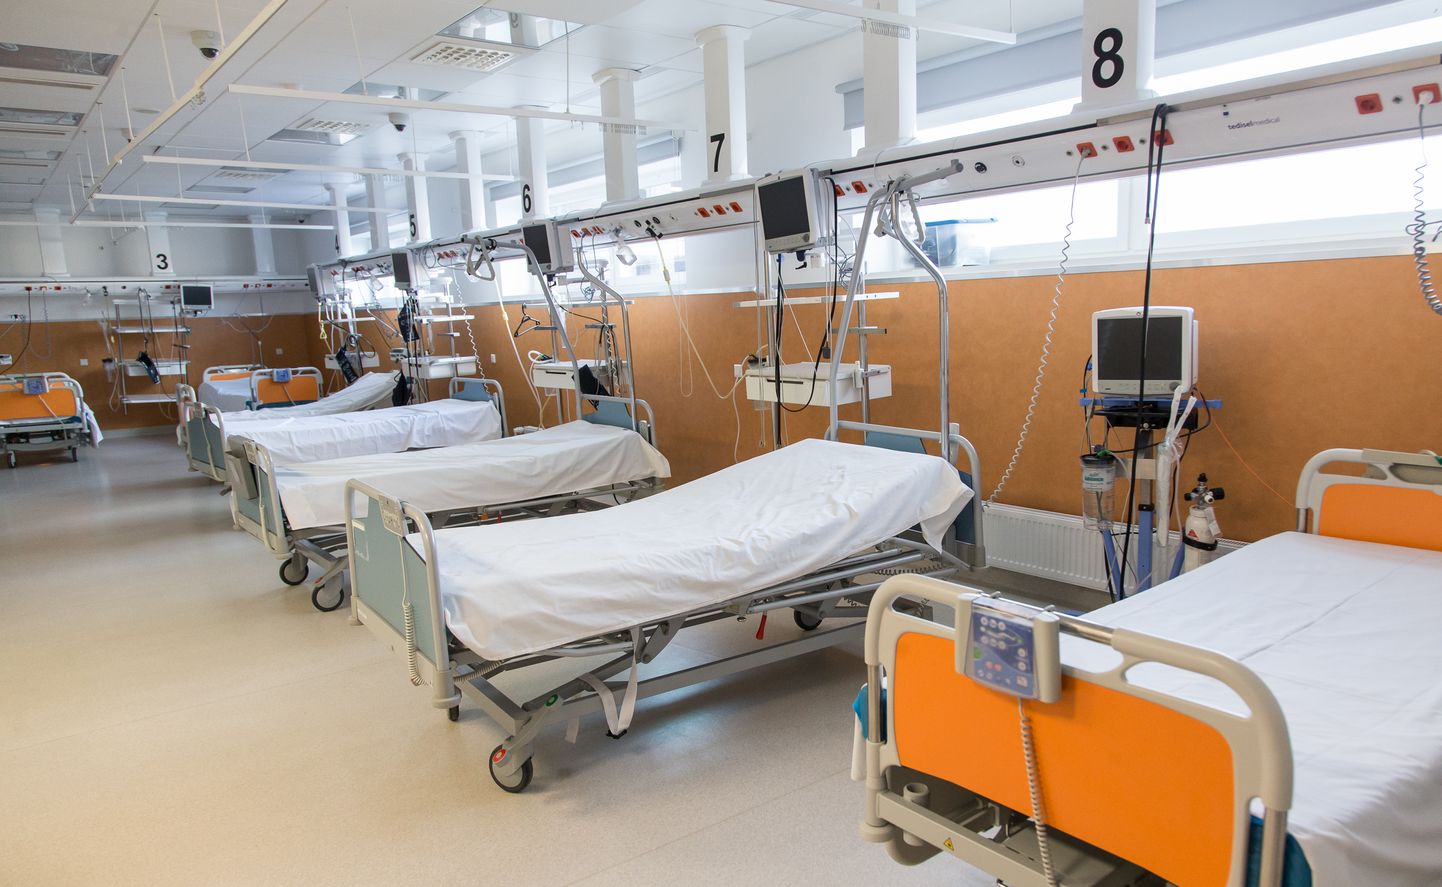 В Ида-Вируской центральной больнице на случай резкого роста числа пациентов с коронавирусом лечебные койки приспособлены и в главном здании, то есть корпусе "К". К счастью, использовать эти помещения до сих пор не приходилось.